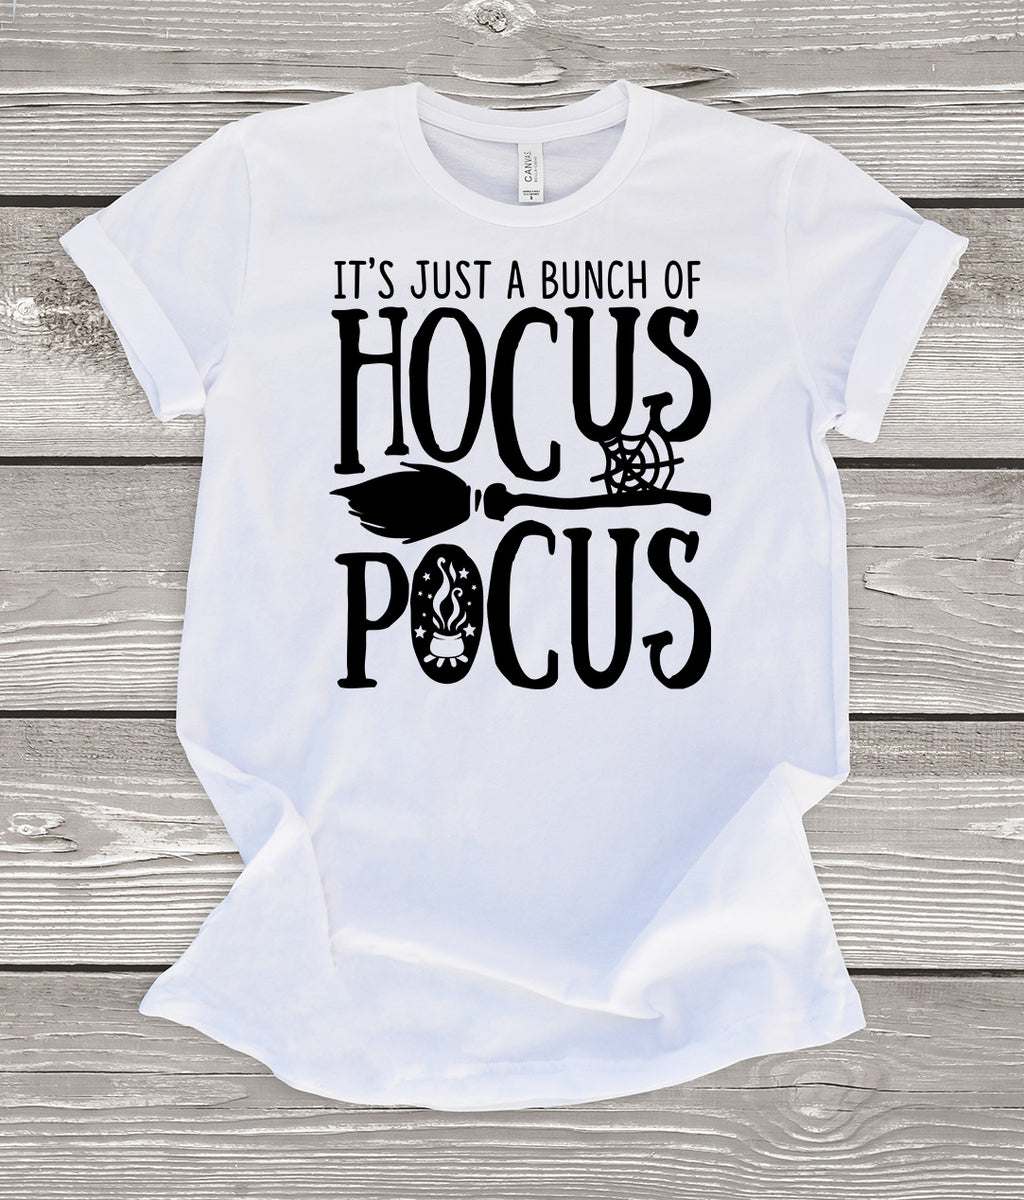 Hocus Pocus T-Shirt